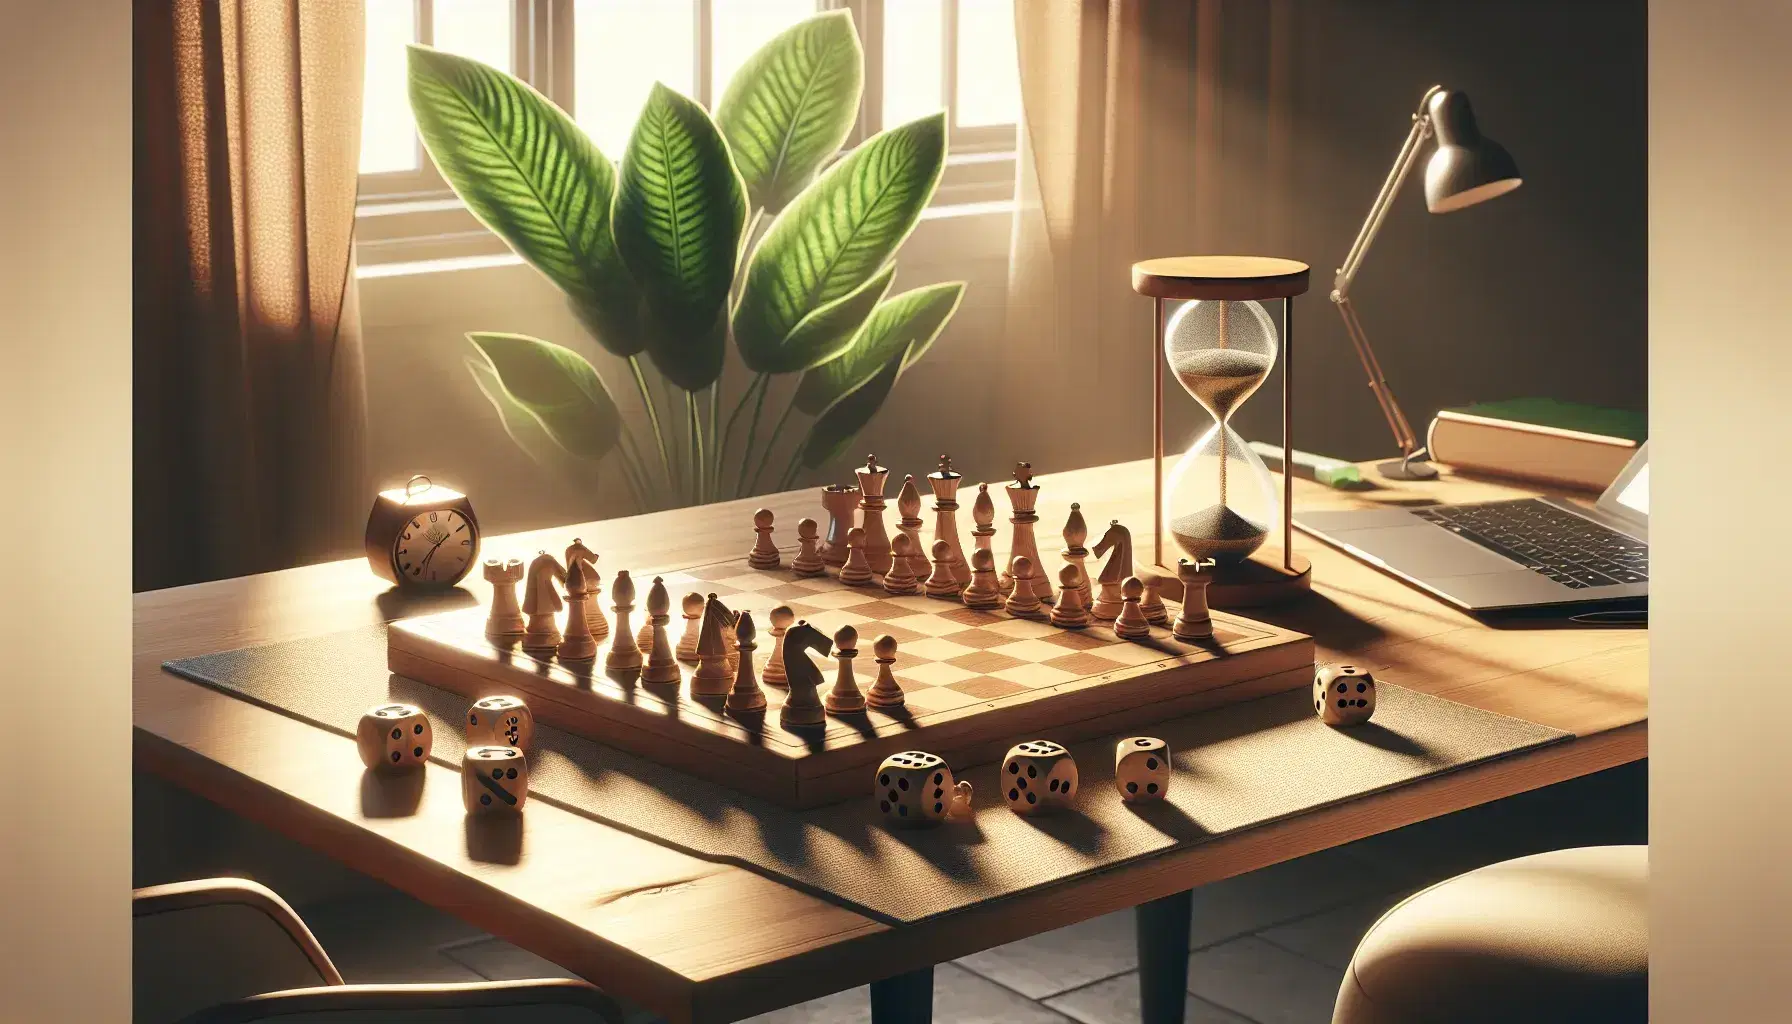 Tablero de ajedrez con piezas en posición de juego, dados con números cinco y tres, y reloj de arena en mesa de madera iluminada por luz natural.